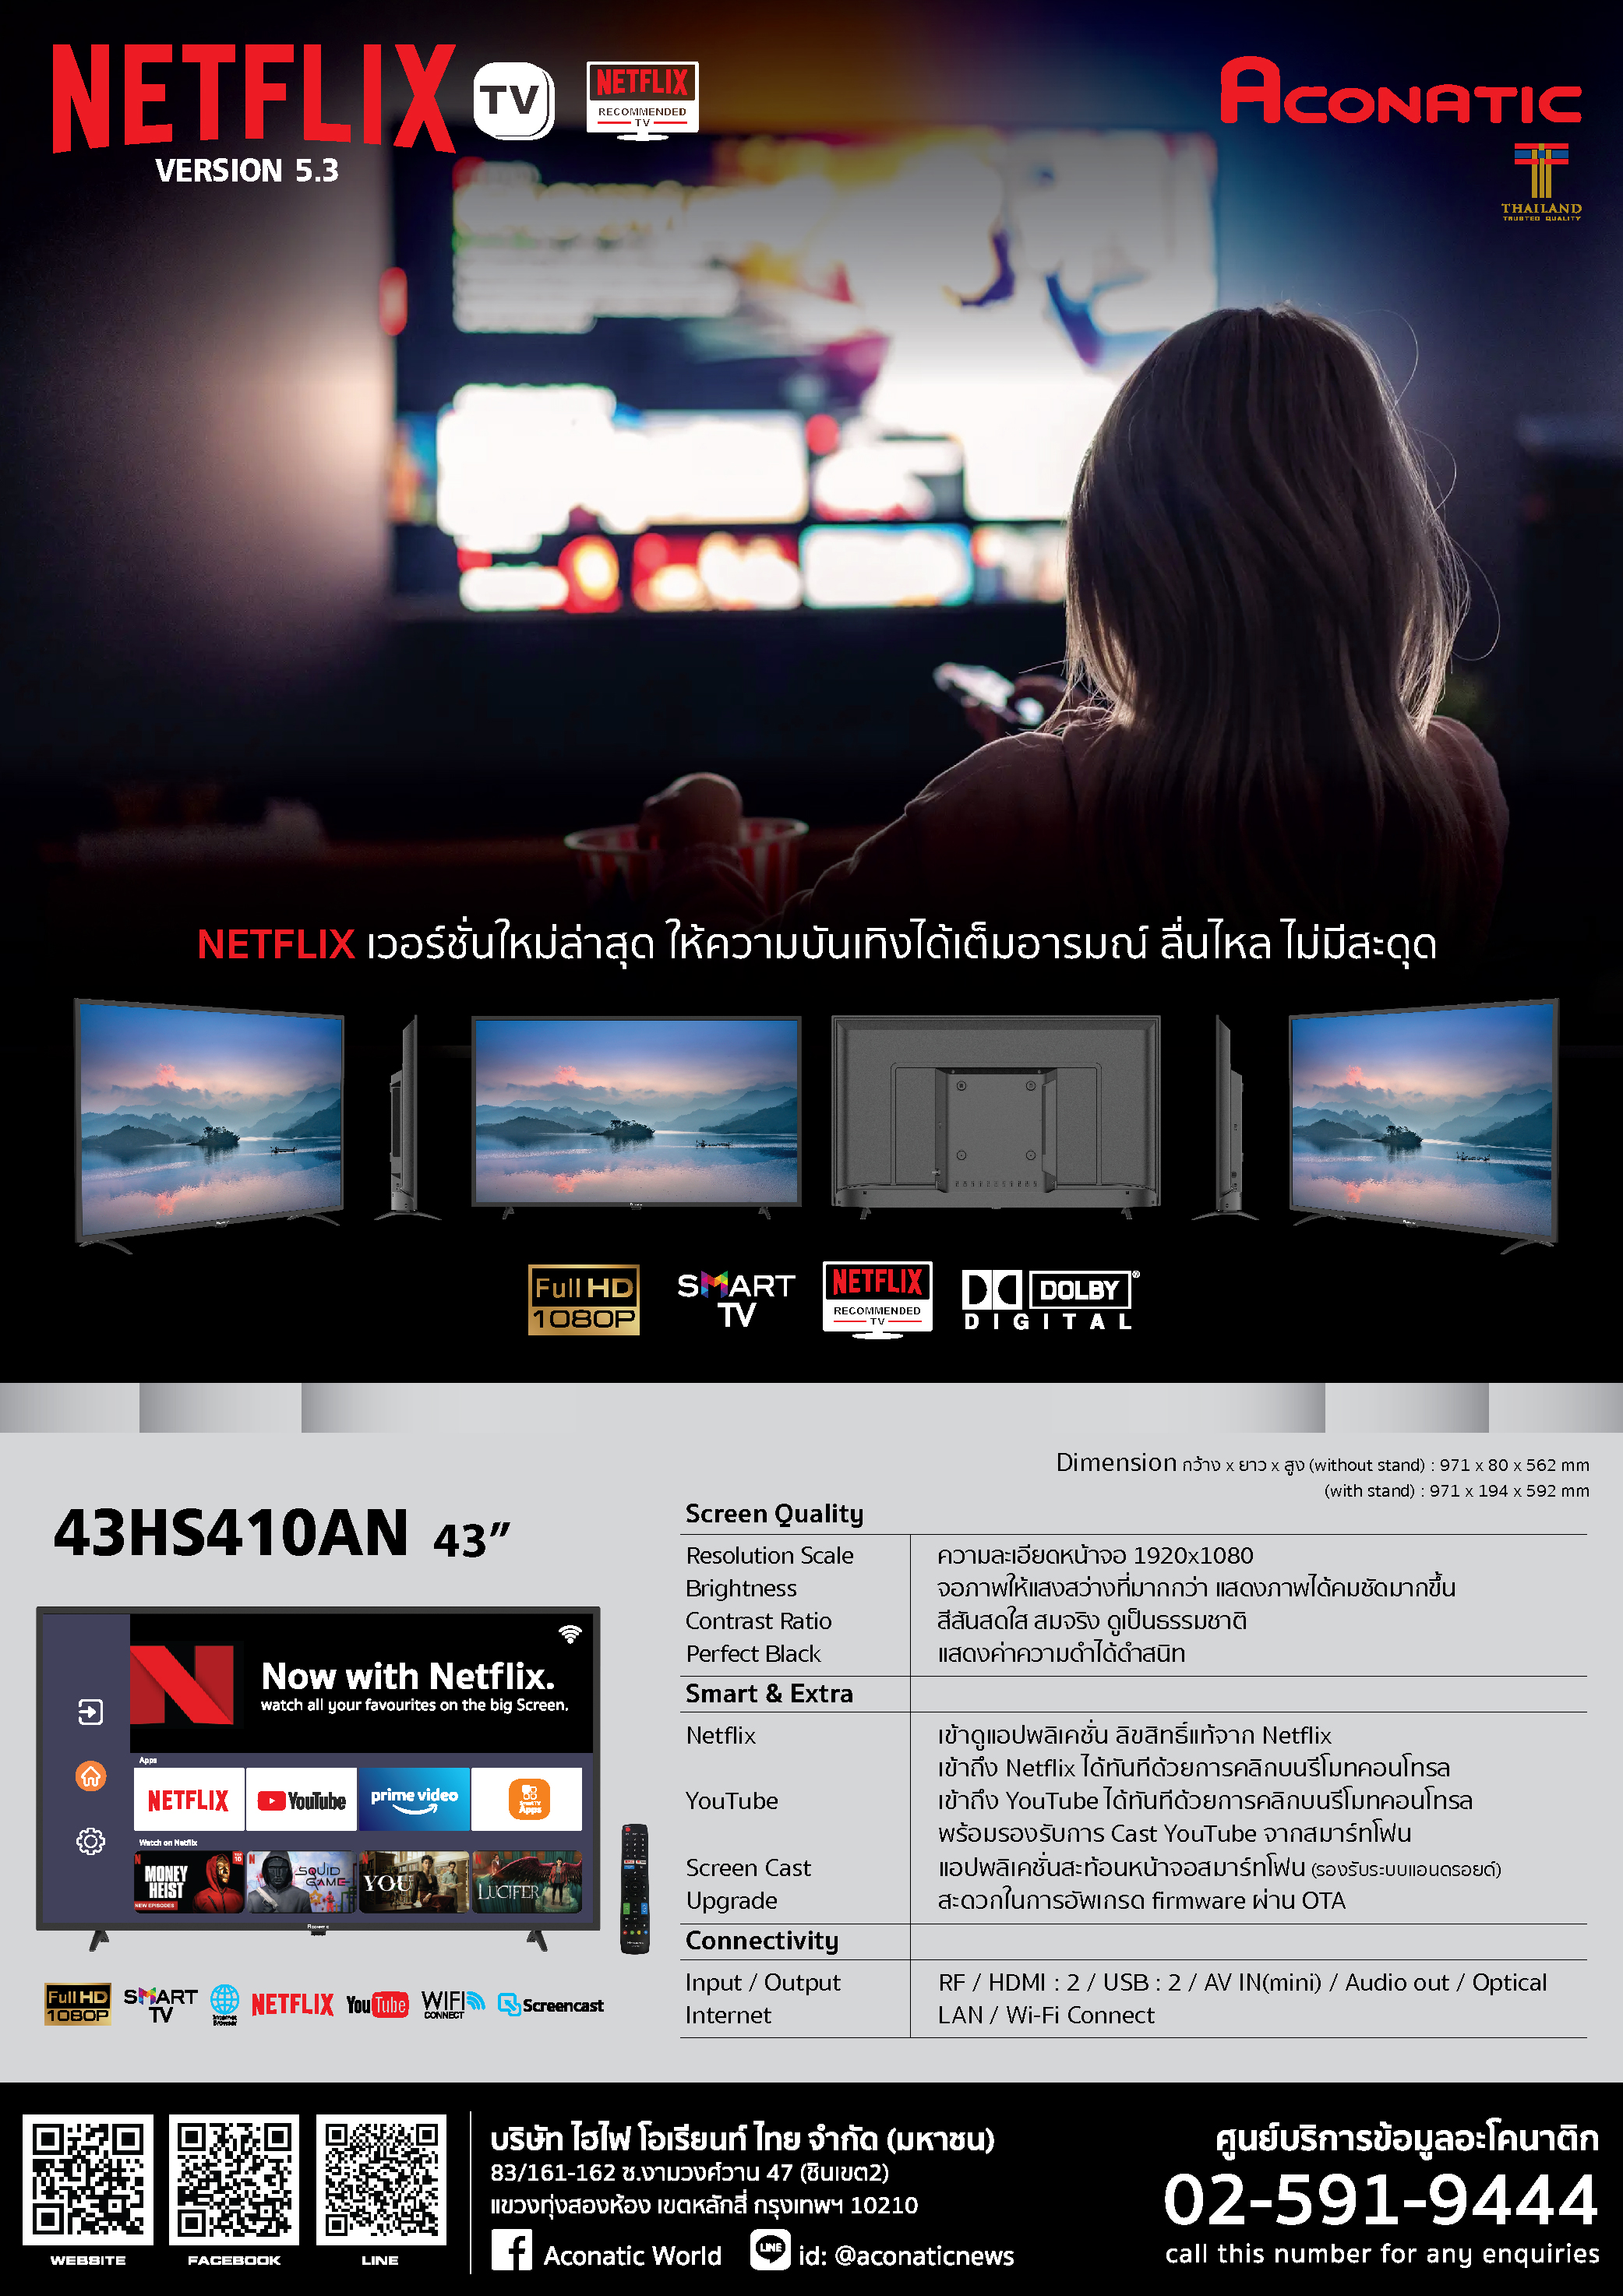 Netflix TV 43" model 43HS410AN